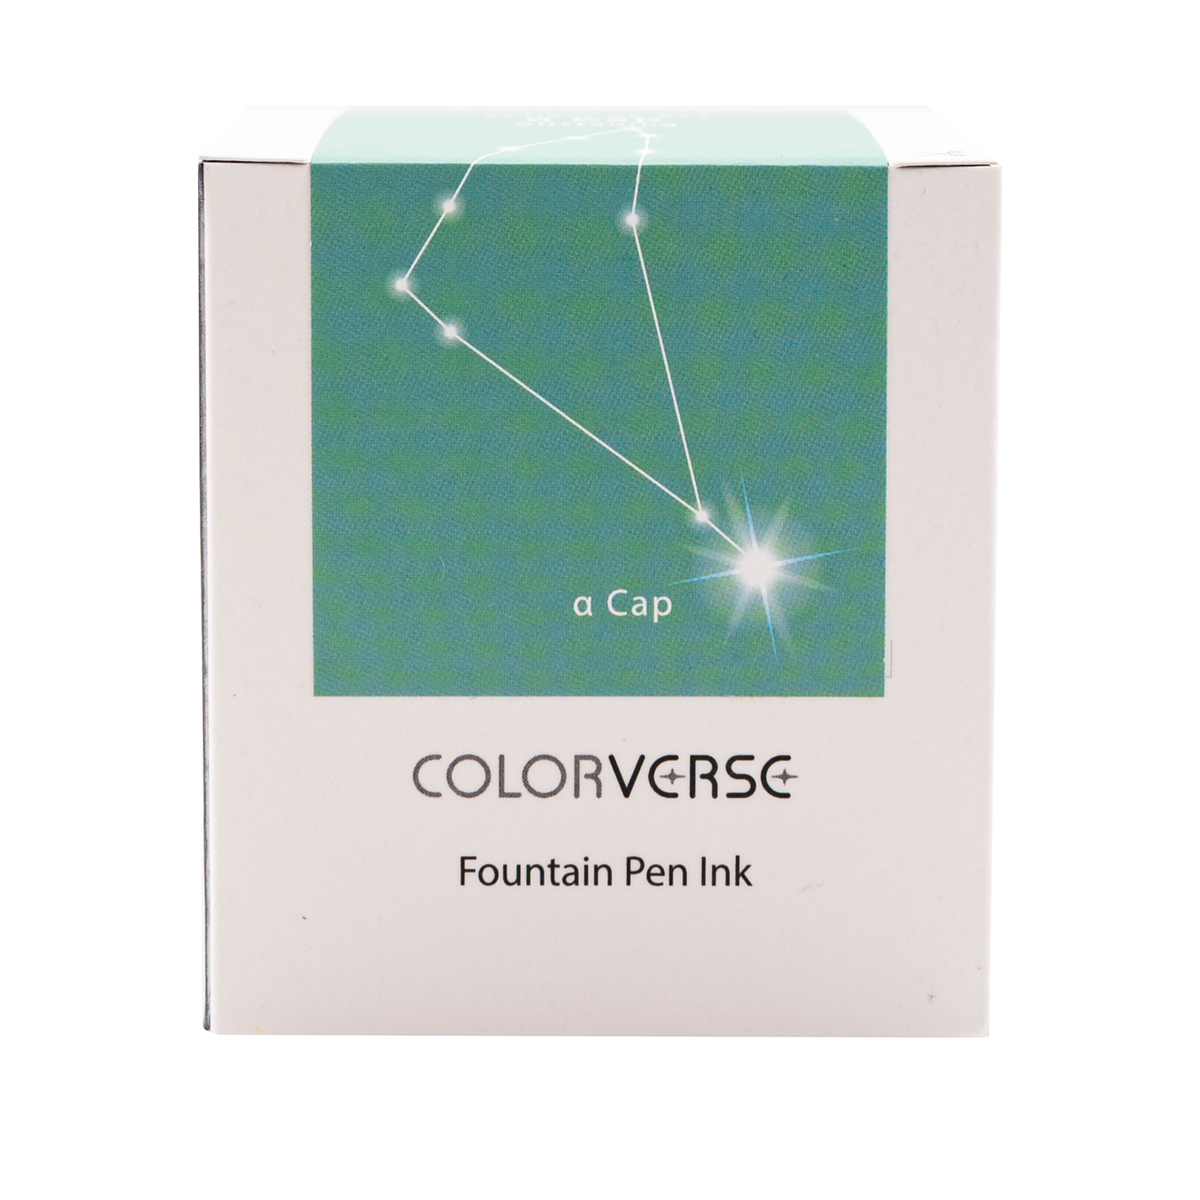 Colorverse Project Vol. 5 Constellation II No. 027 - a Cap